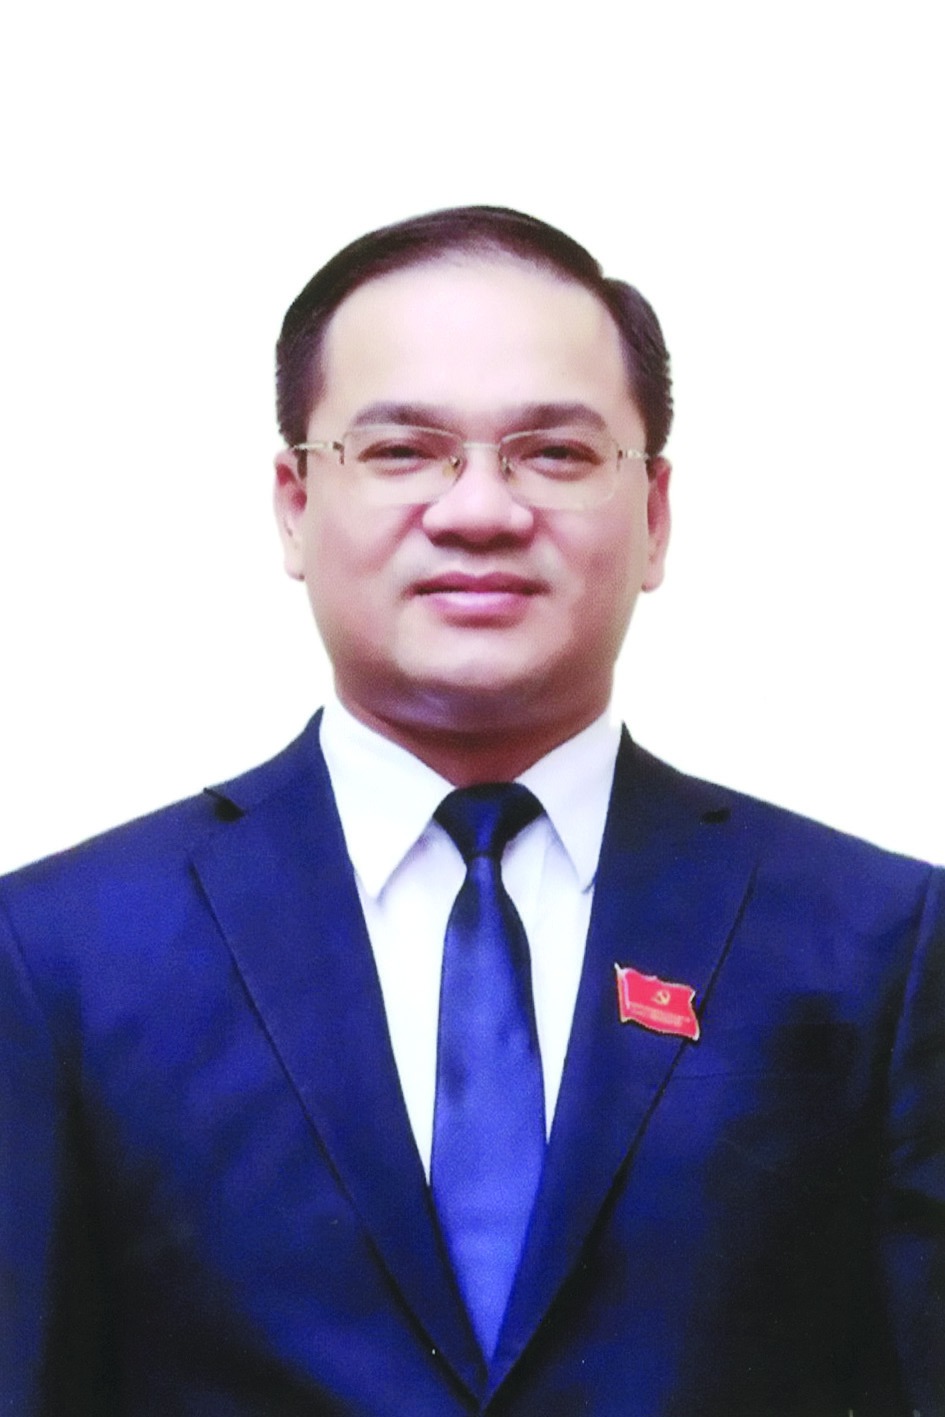 Chương trình hành động của Bí thư Huyện ủy Mỹ Đức Nguyễn Ngọc Việt, ứng cử viên đại biểu HĐND TP Hà Nội nhiệm kỳ 2021 - 2026 - Ảnh 1